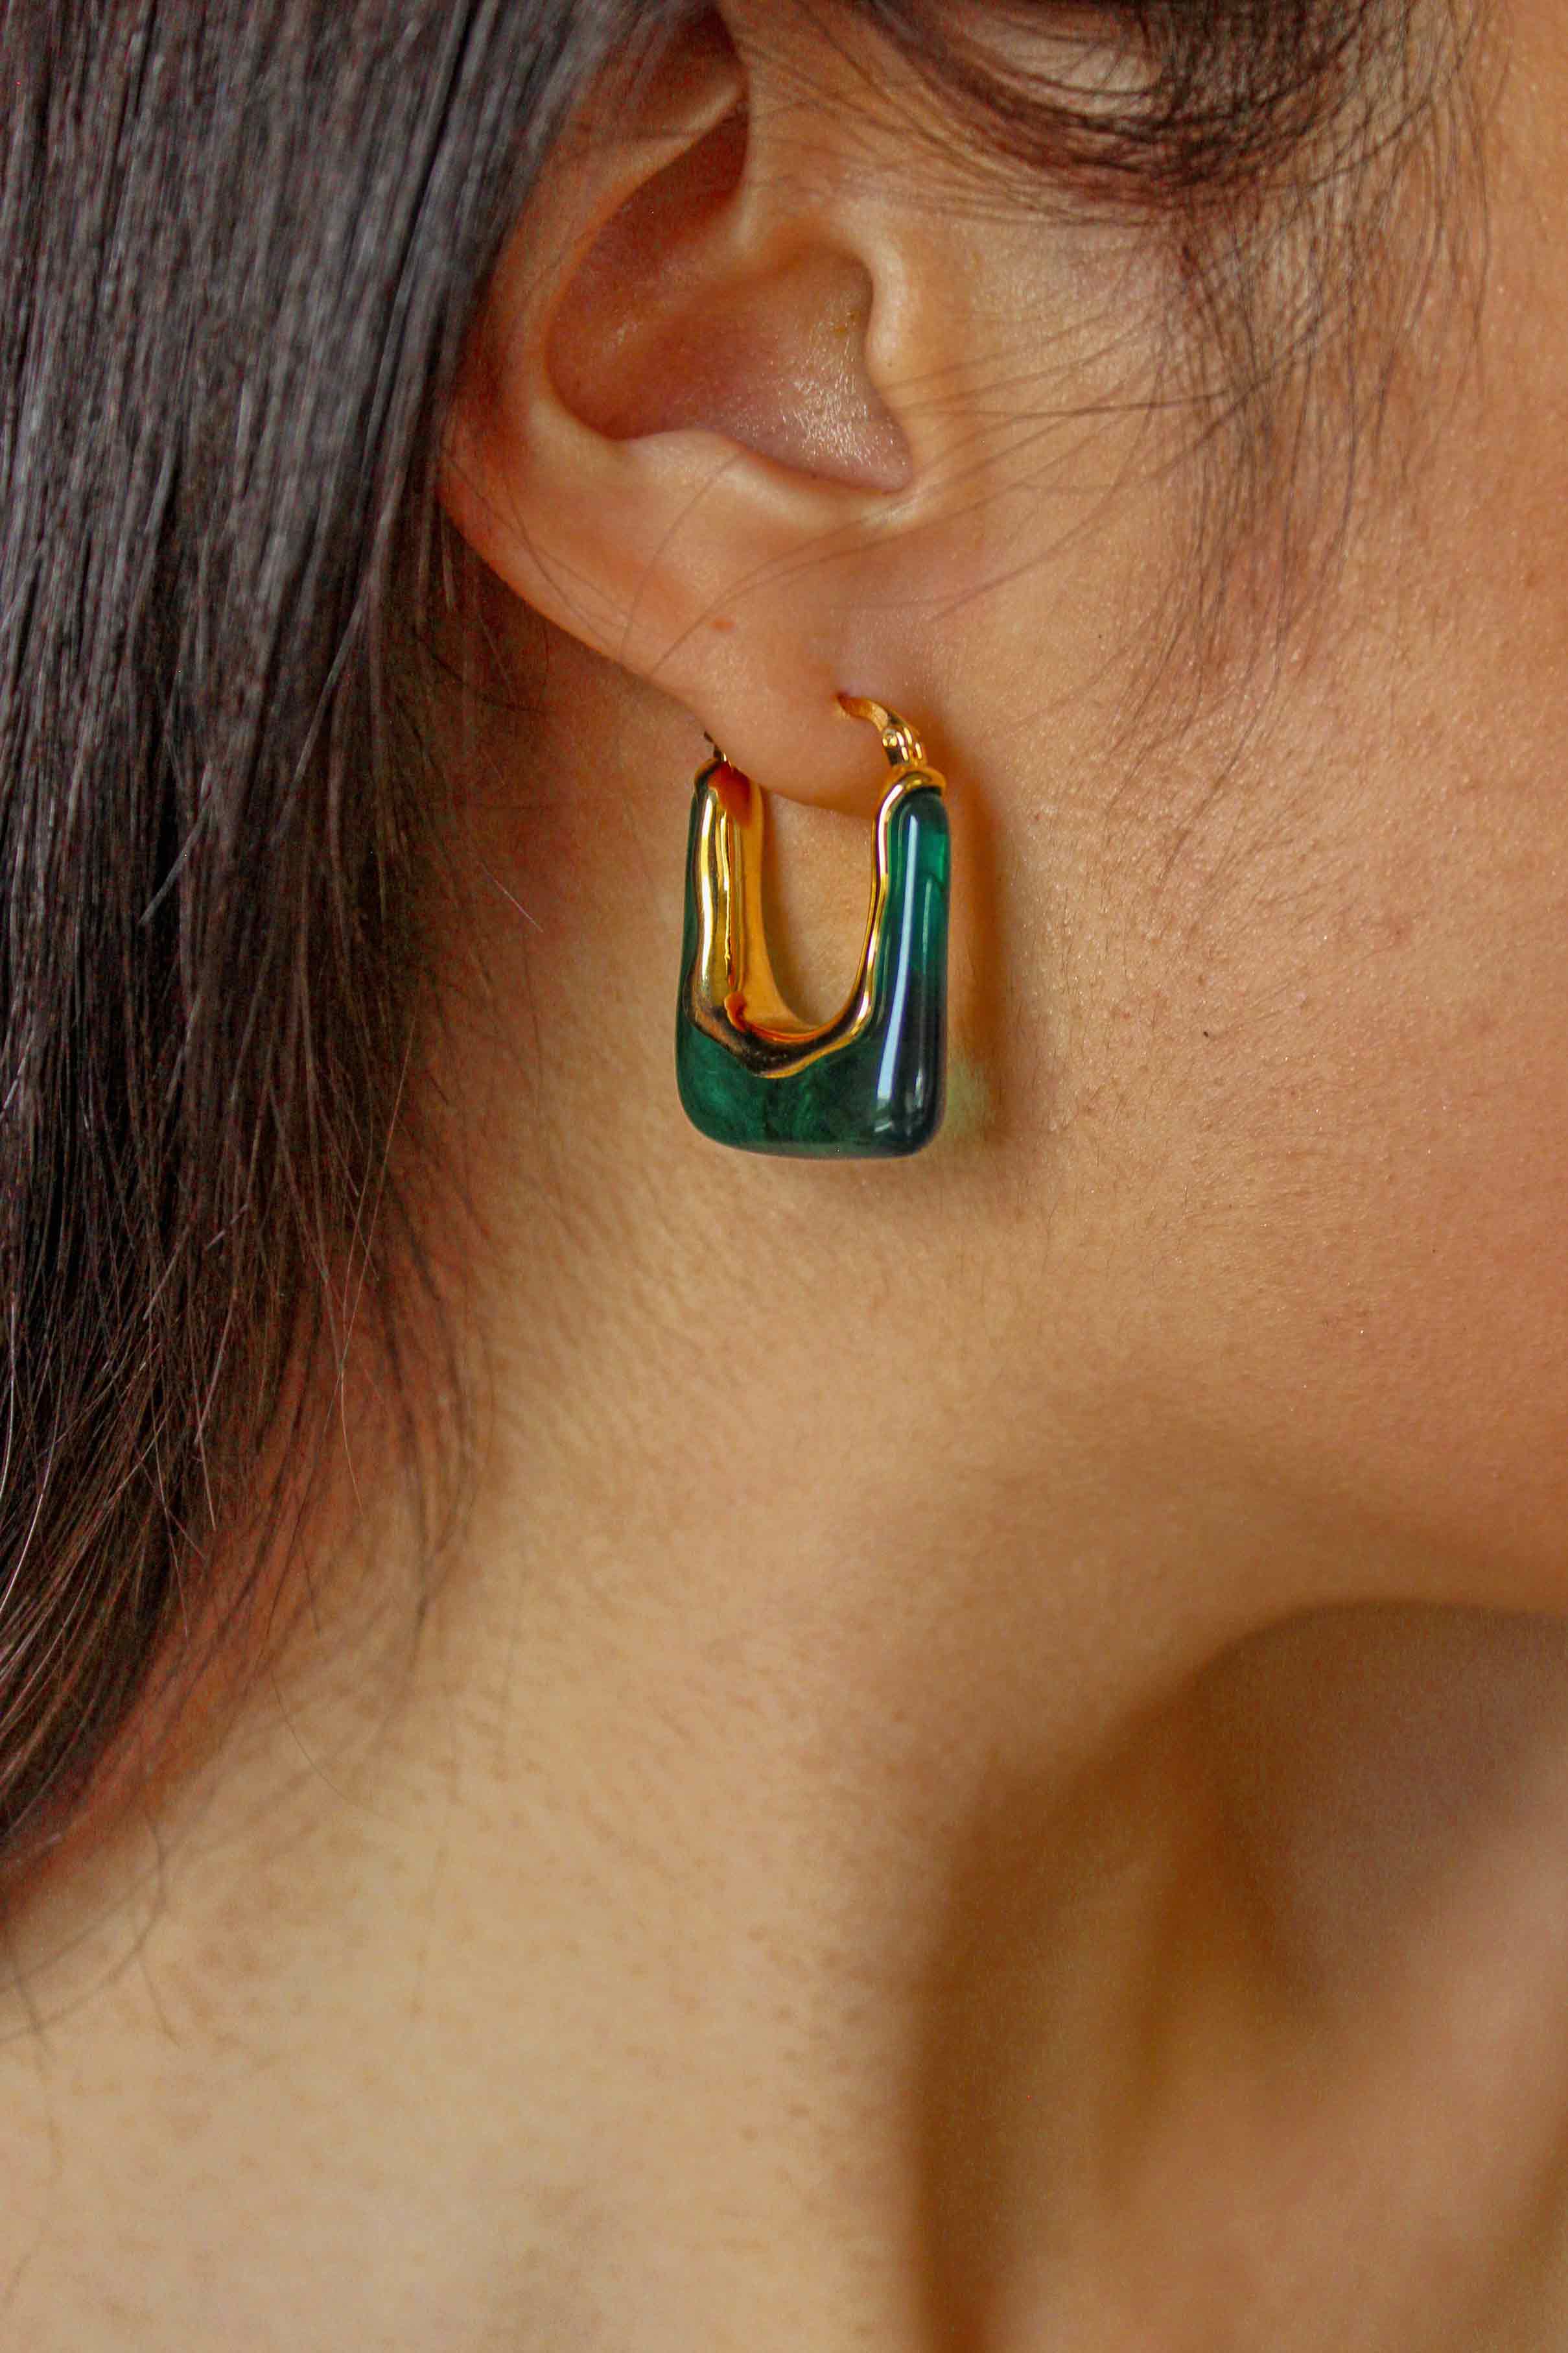 green resin earrings when worn